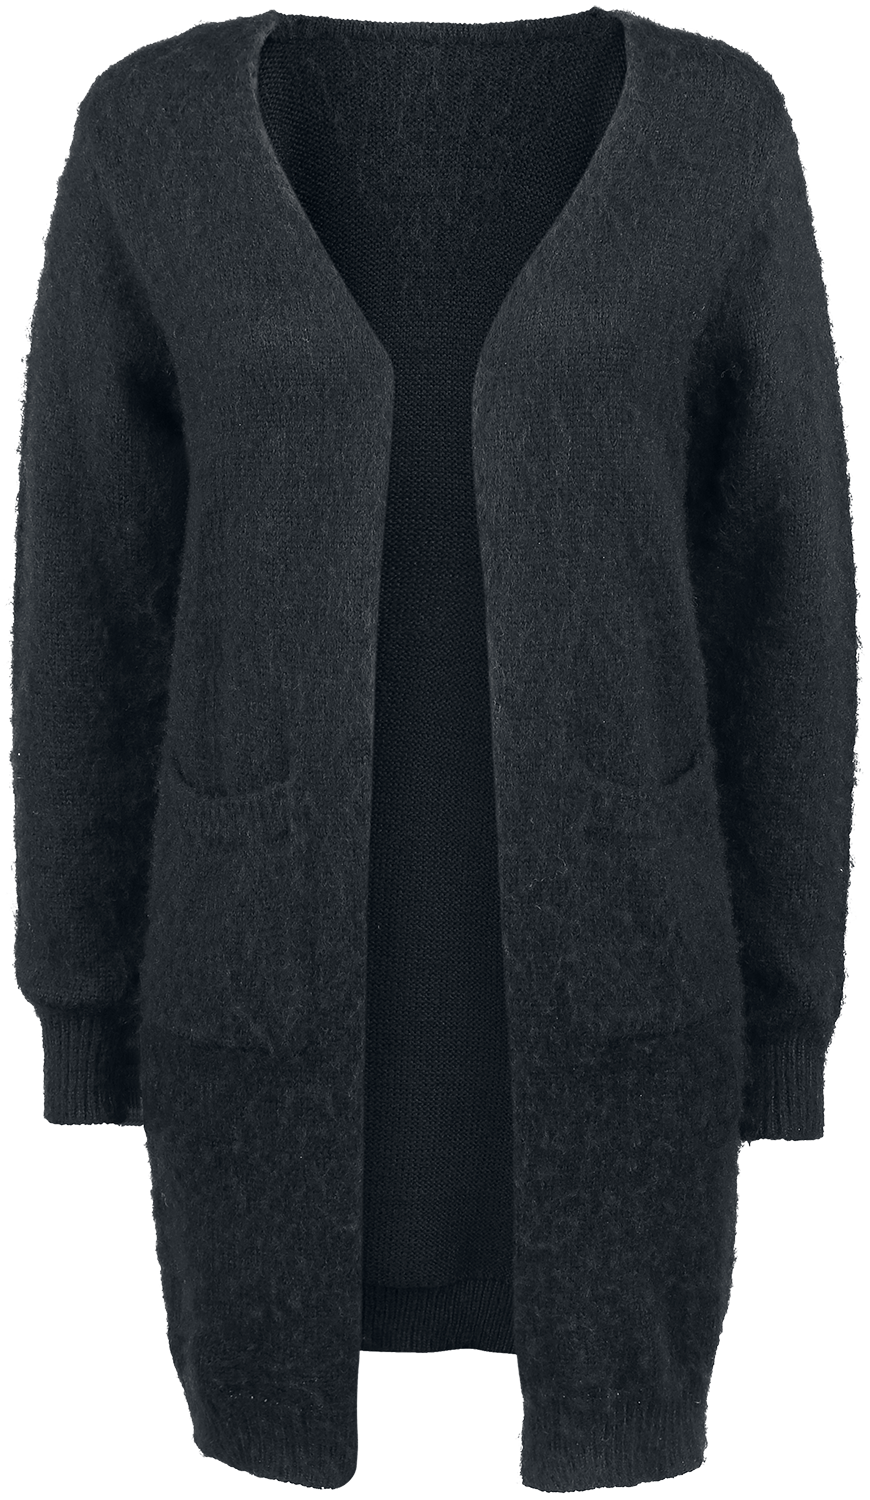 Fashion Victim - Wool Cardigan - Girls' cardigan - black image